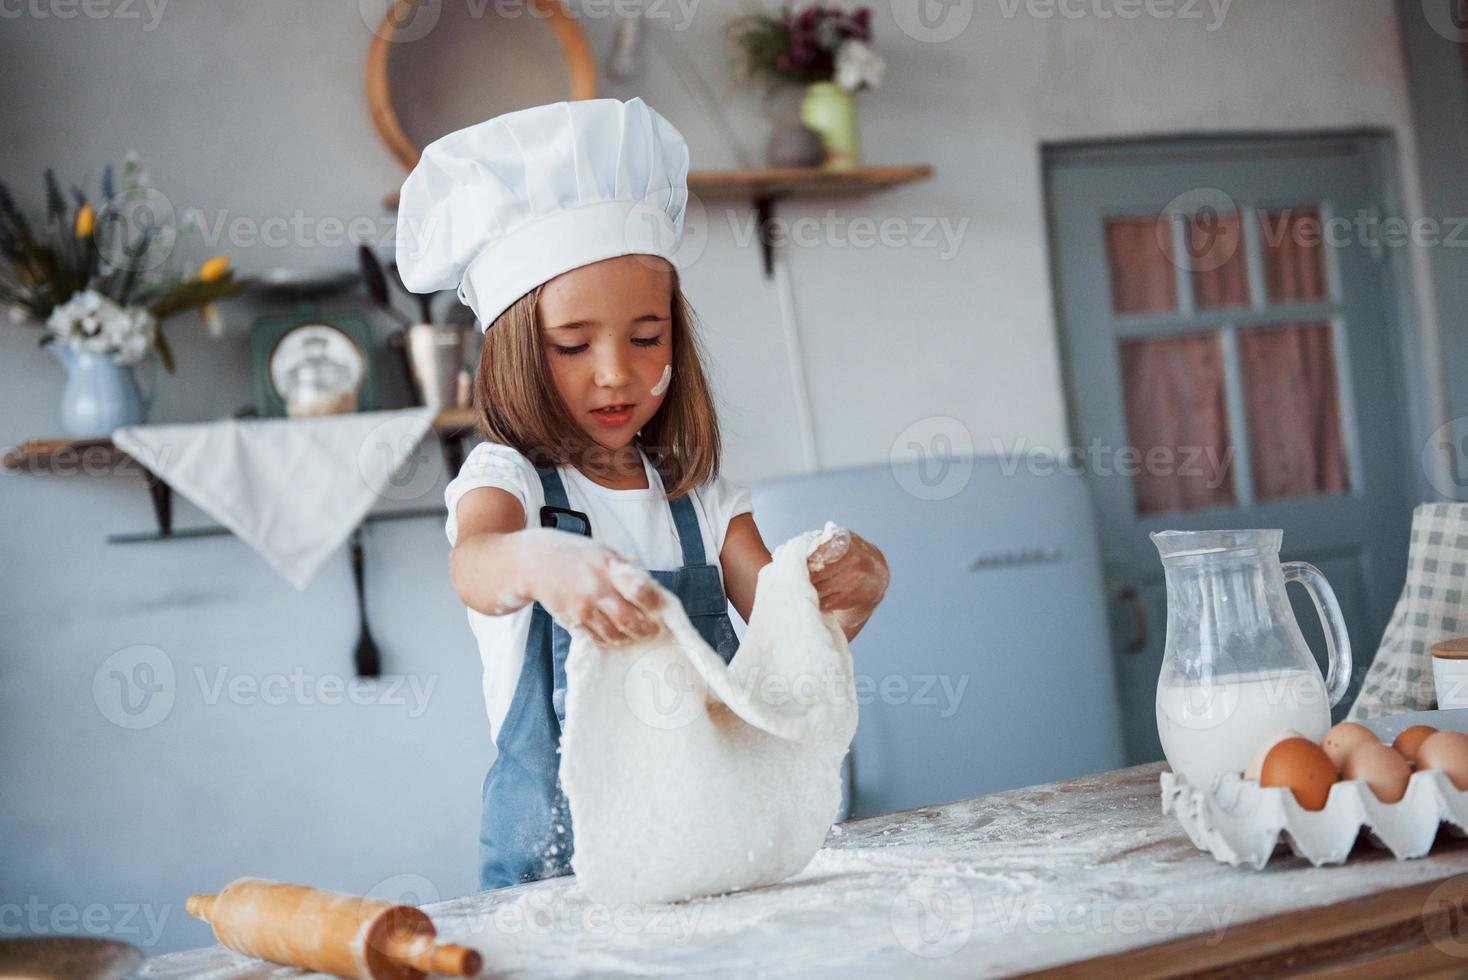 niño lindo con uniforme de chef blanco preparando comida en la cocina foto